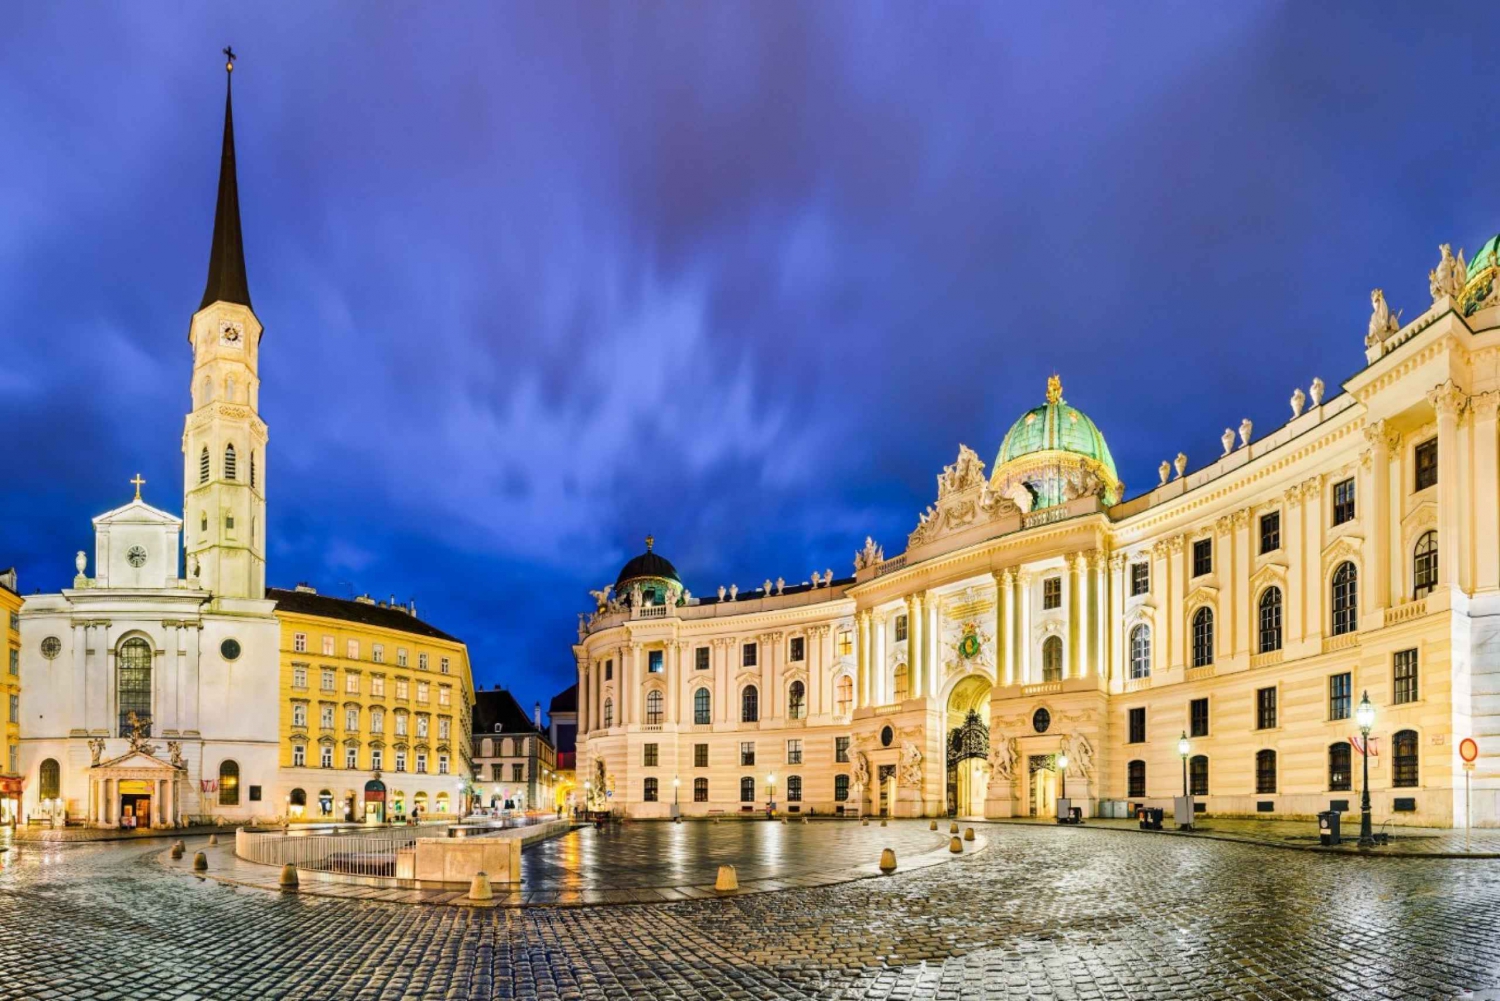 Wiens herligheter: En tur gjennom keiserlig eleganse